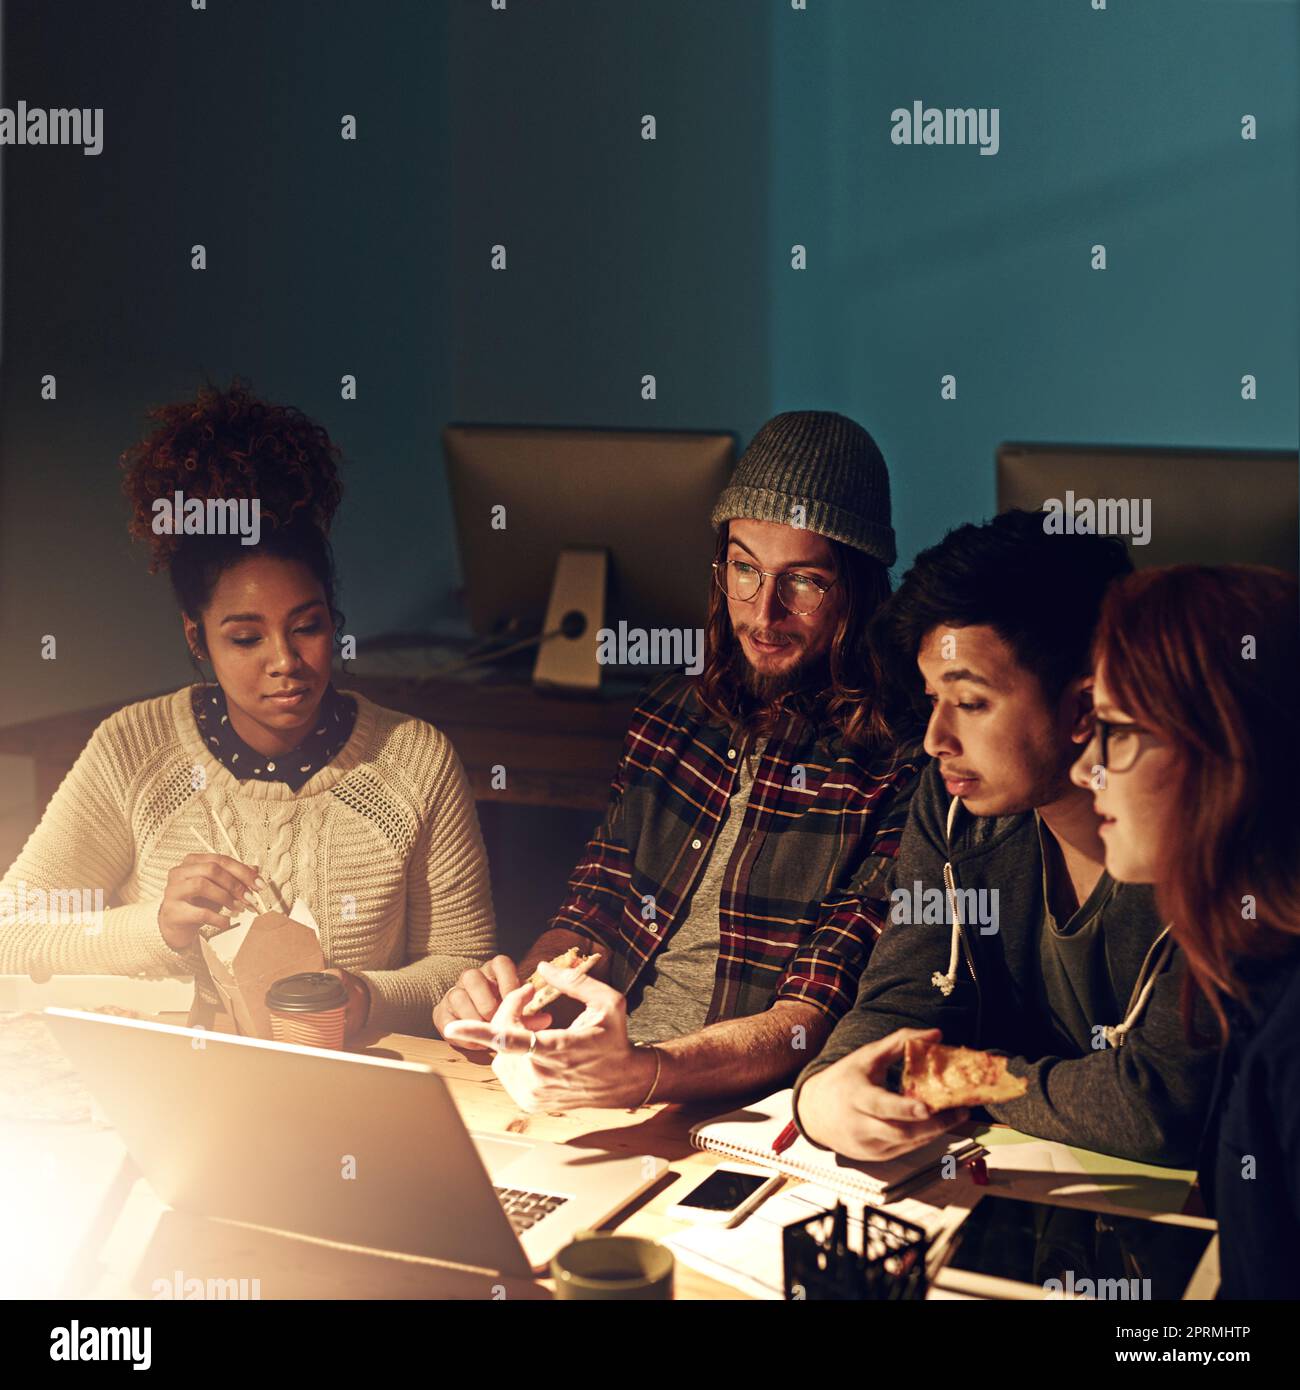 Lavorare insieme per superare la scadenza. Un team aziendale che utilizza un notebook insieme durante un turno di notte al lavoro. Foto Stock